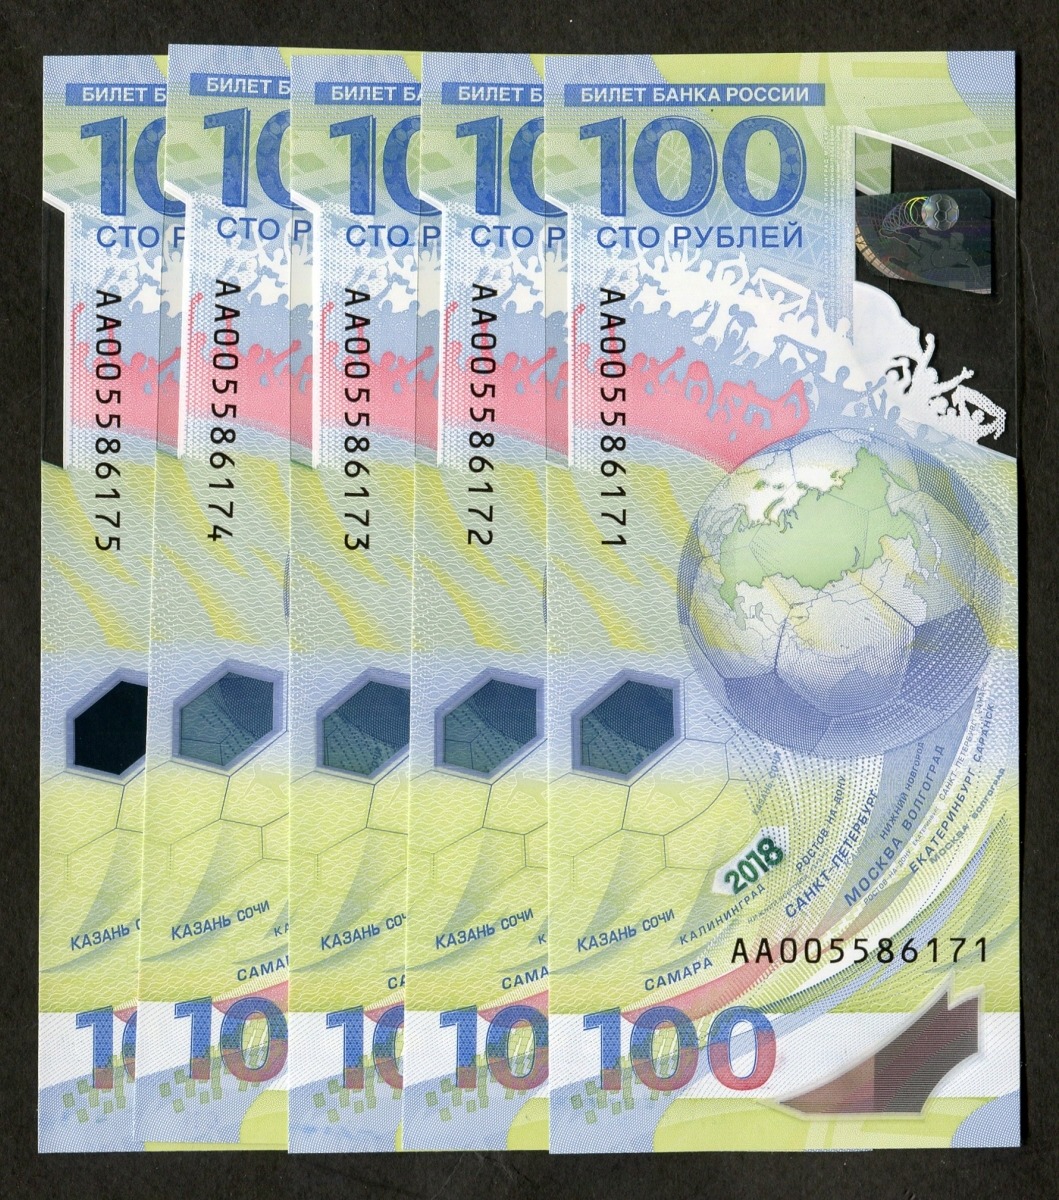 러시아 2018년 월드컵 기념 폴리머 지폐 005포인트 연번호 5매 일괄